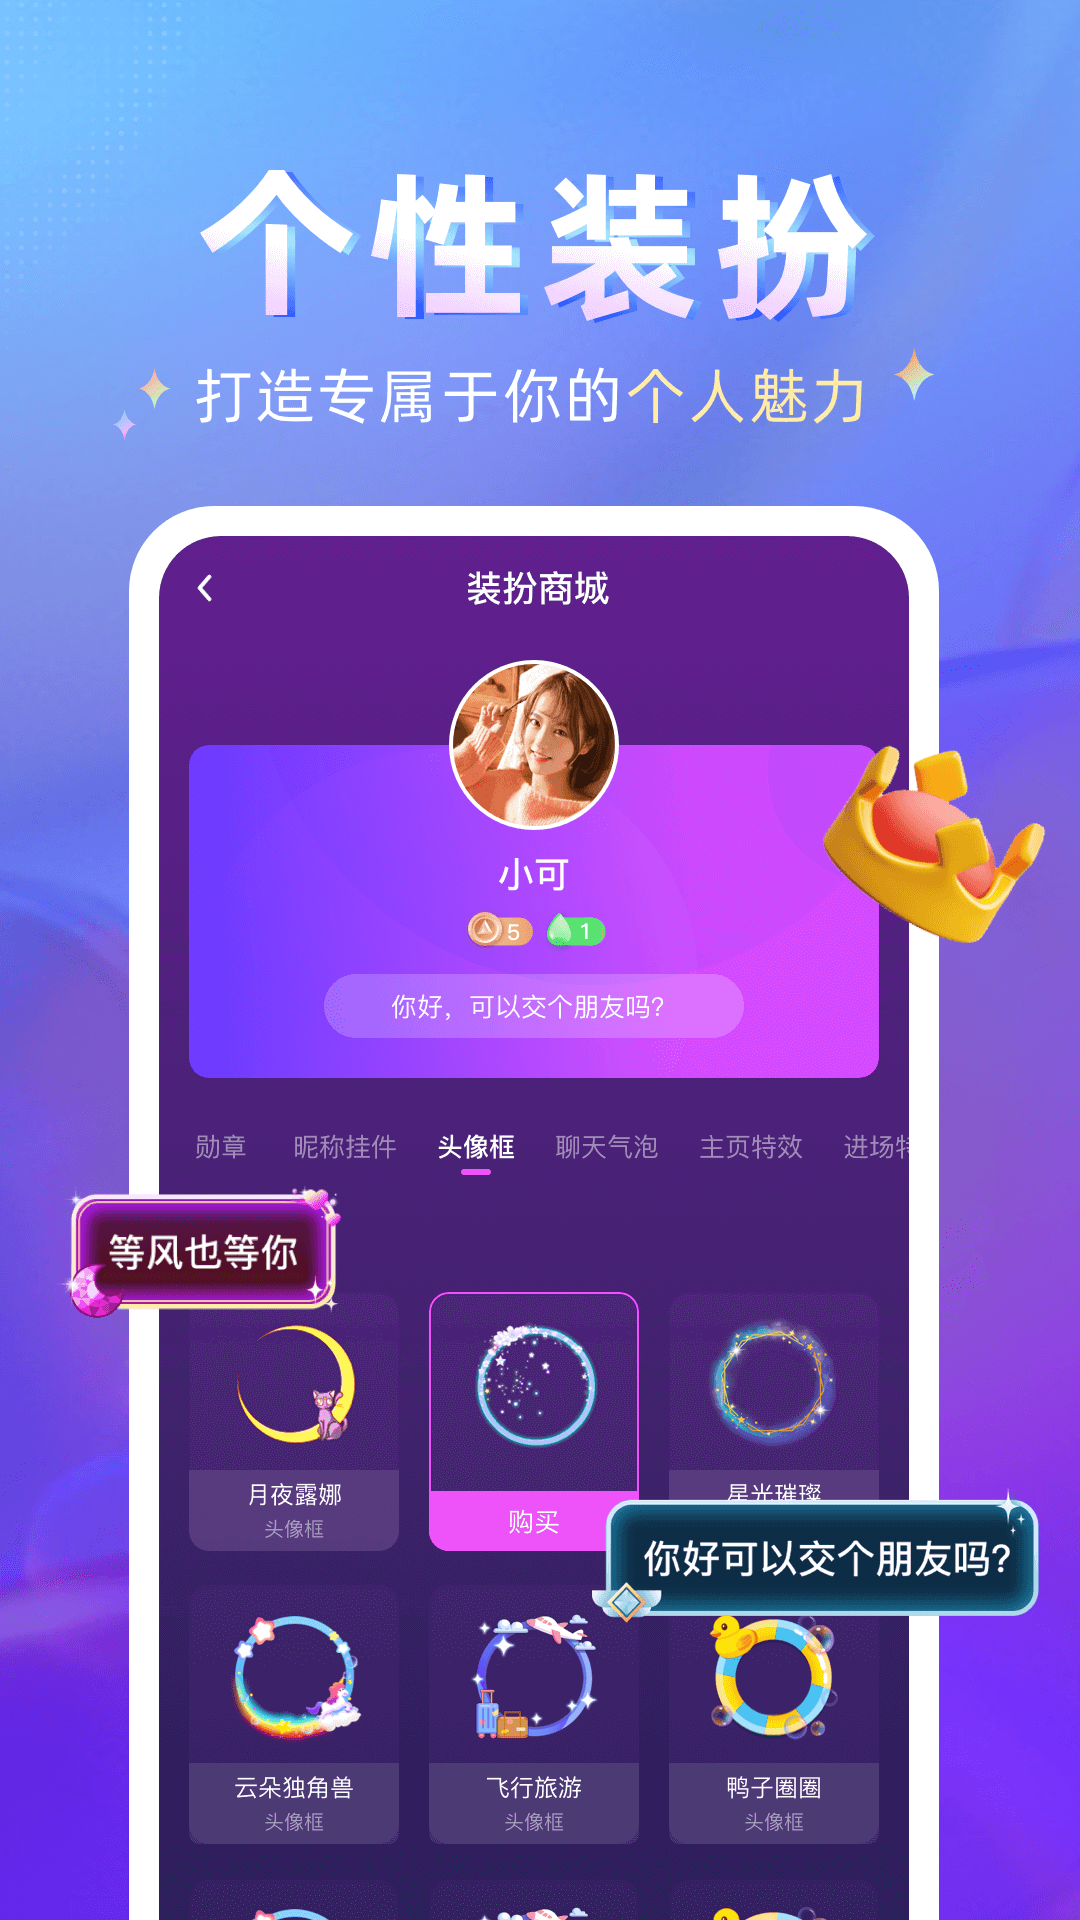 哩吖语音官方版app图片1